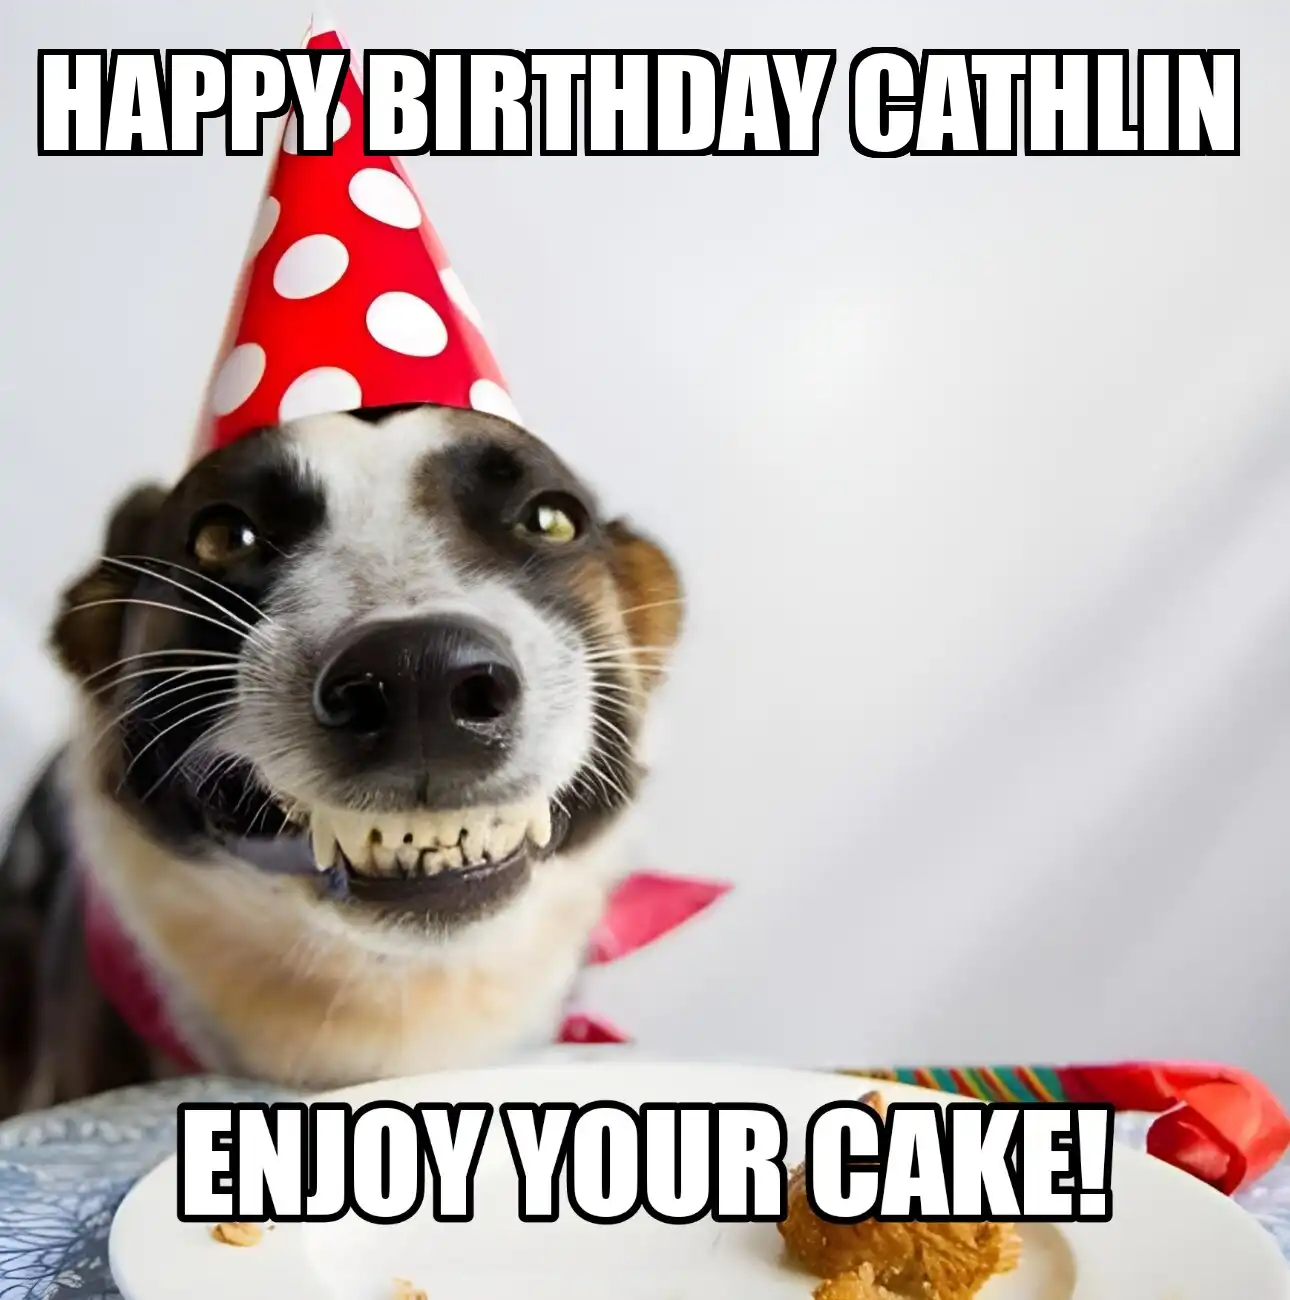 Happy Birthday Cathlin Enjoy Your Cake Dog Meme